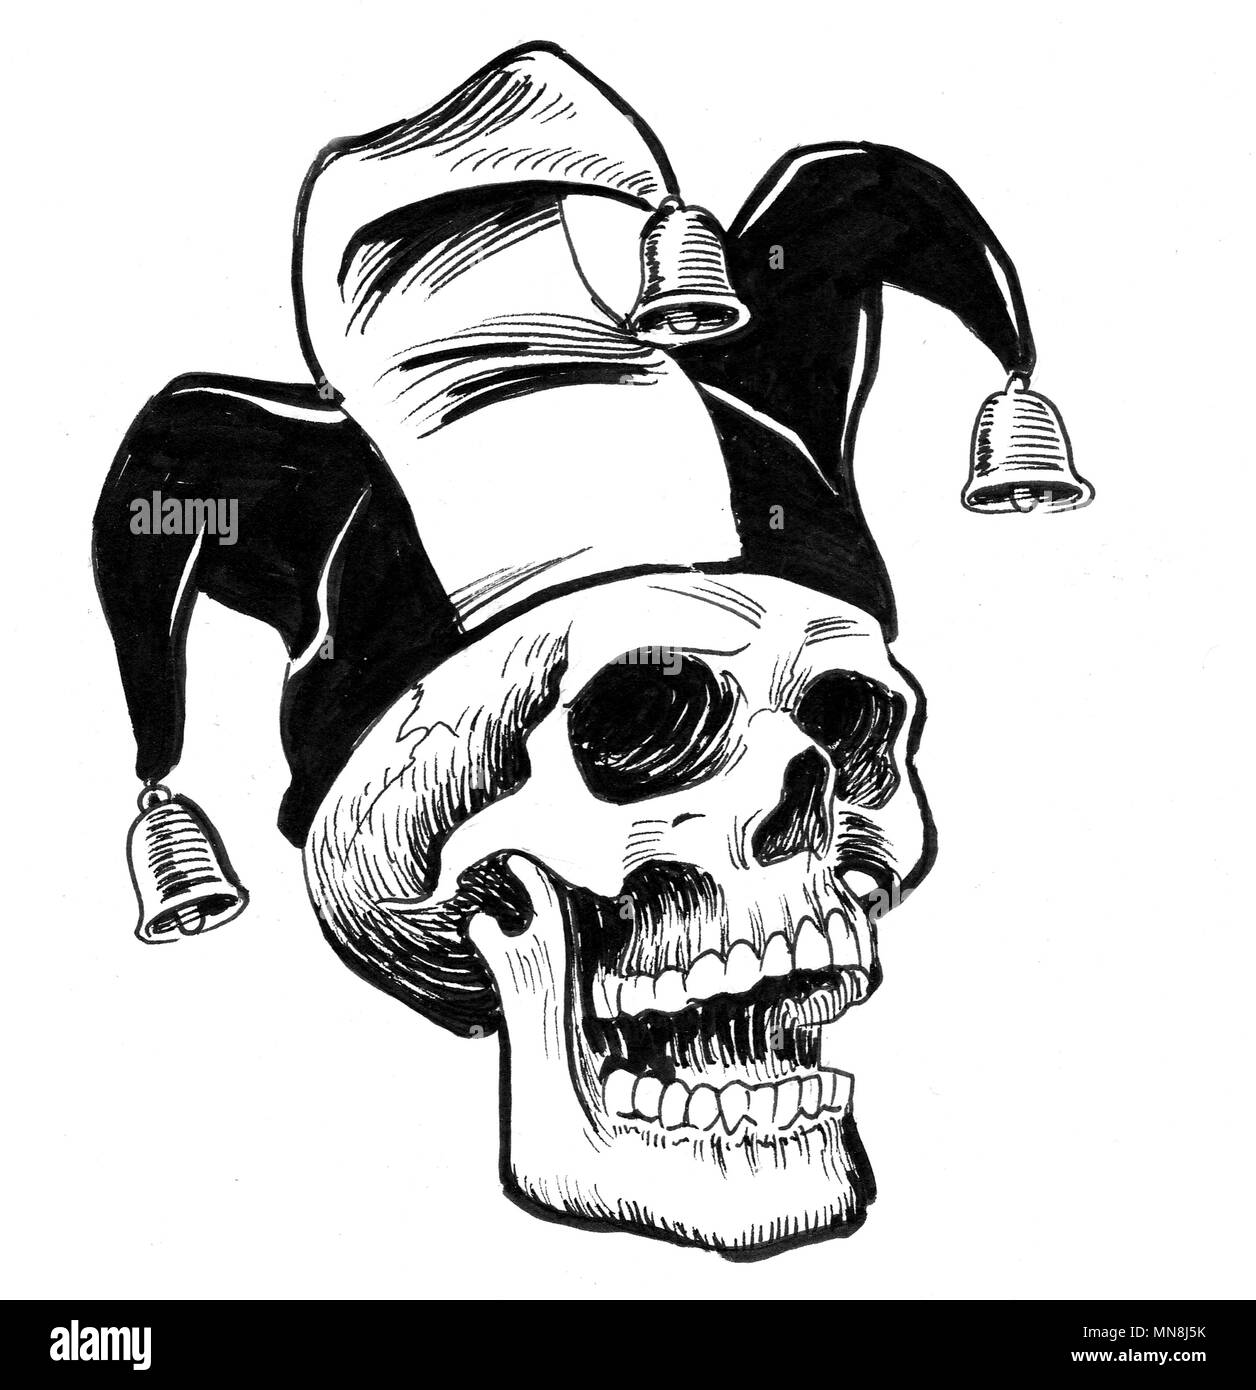 Jester skull. Ink black and white 